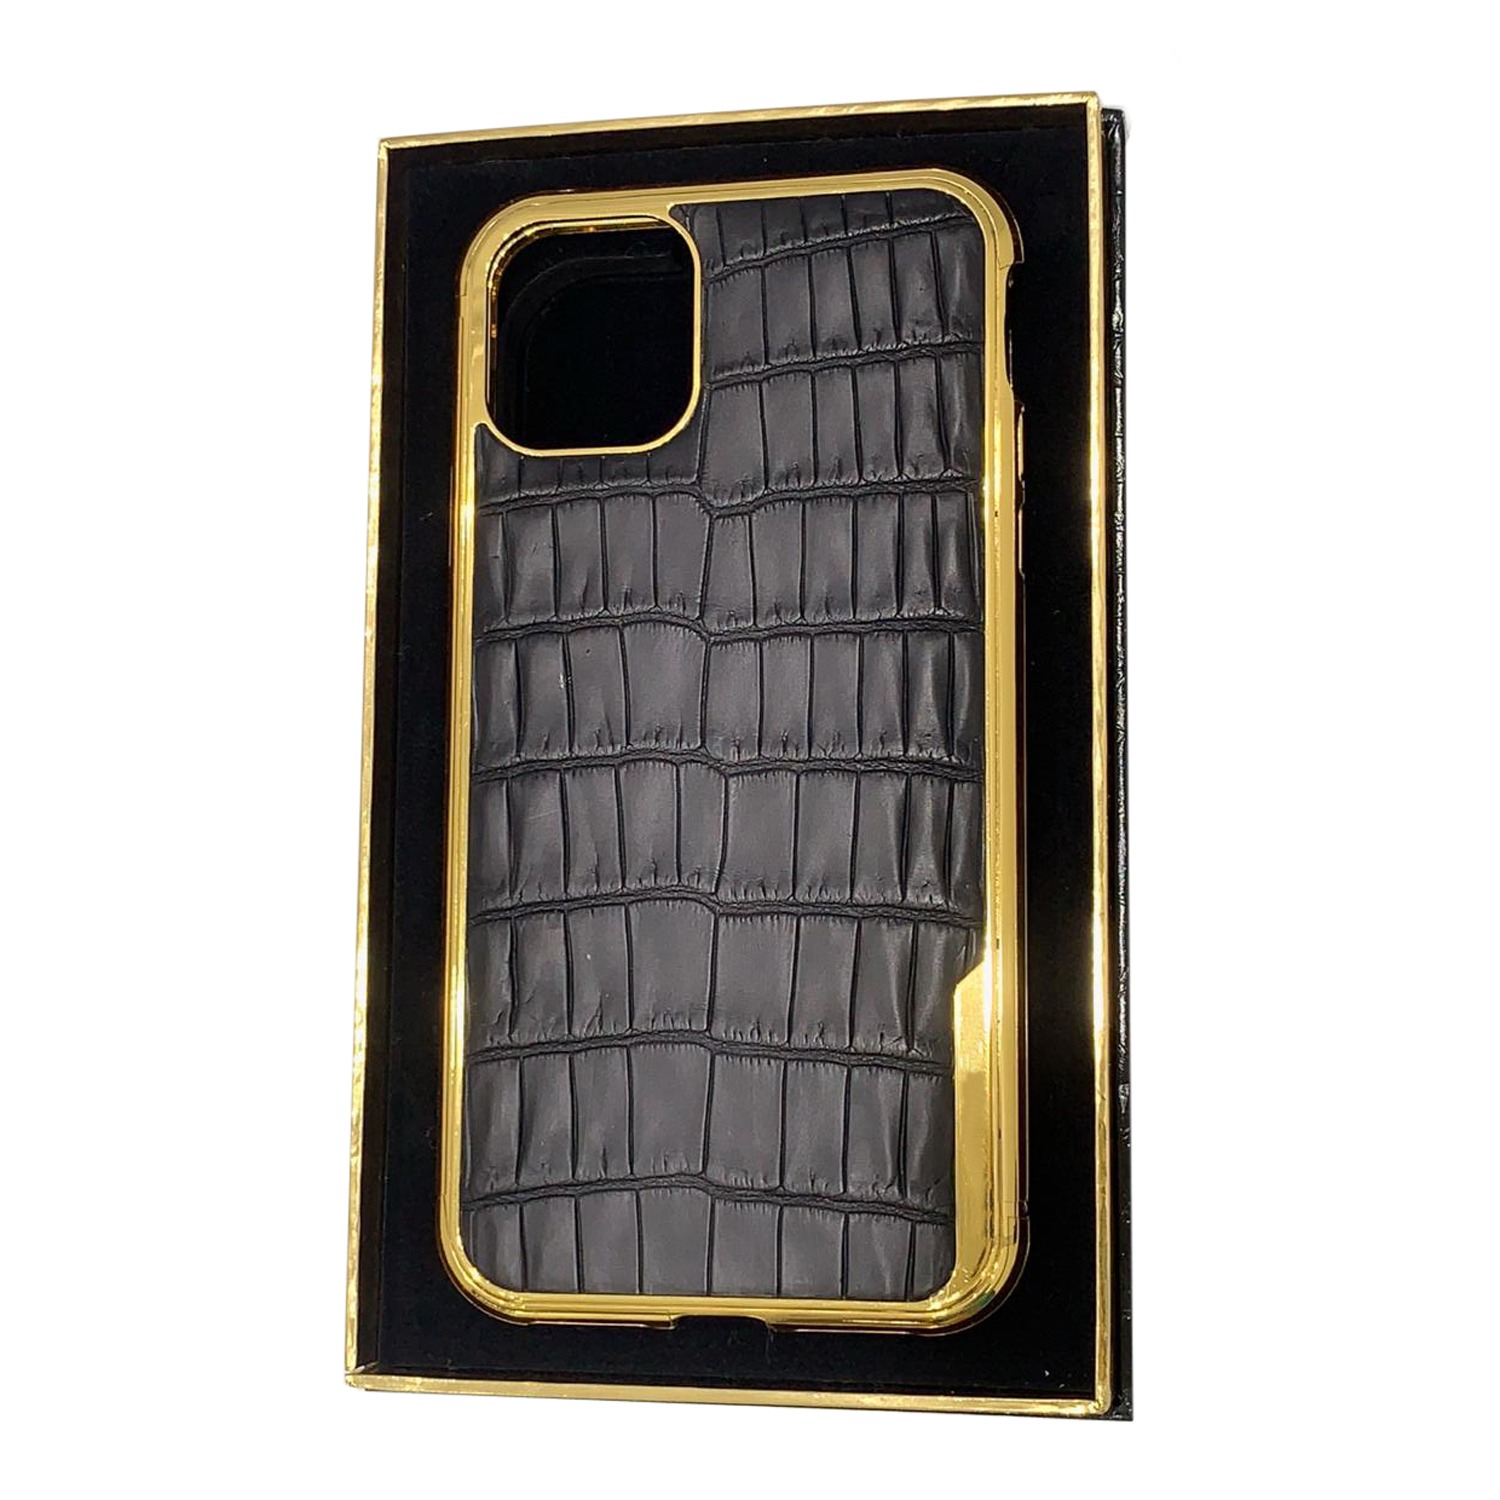 Foto case ini memperlihatkan black leather dengan logo gold 24K di samping agar terlihat fashionable dan mewah.